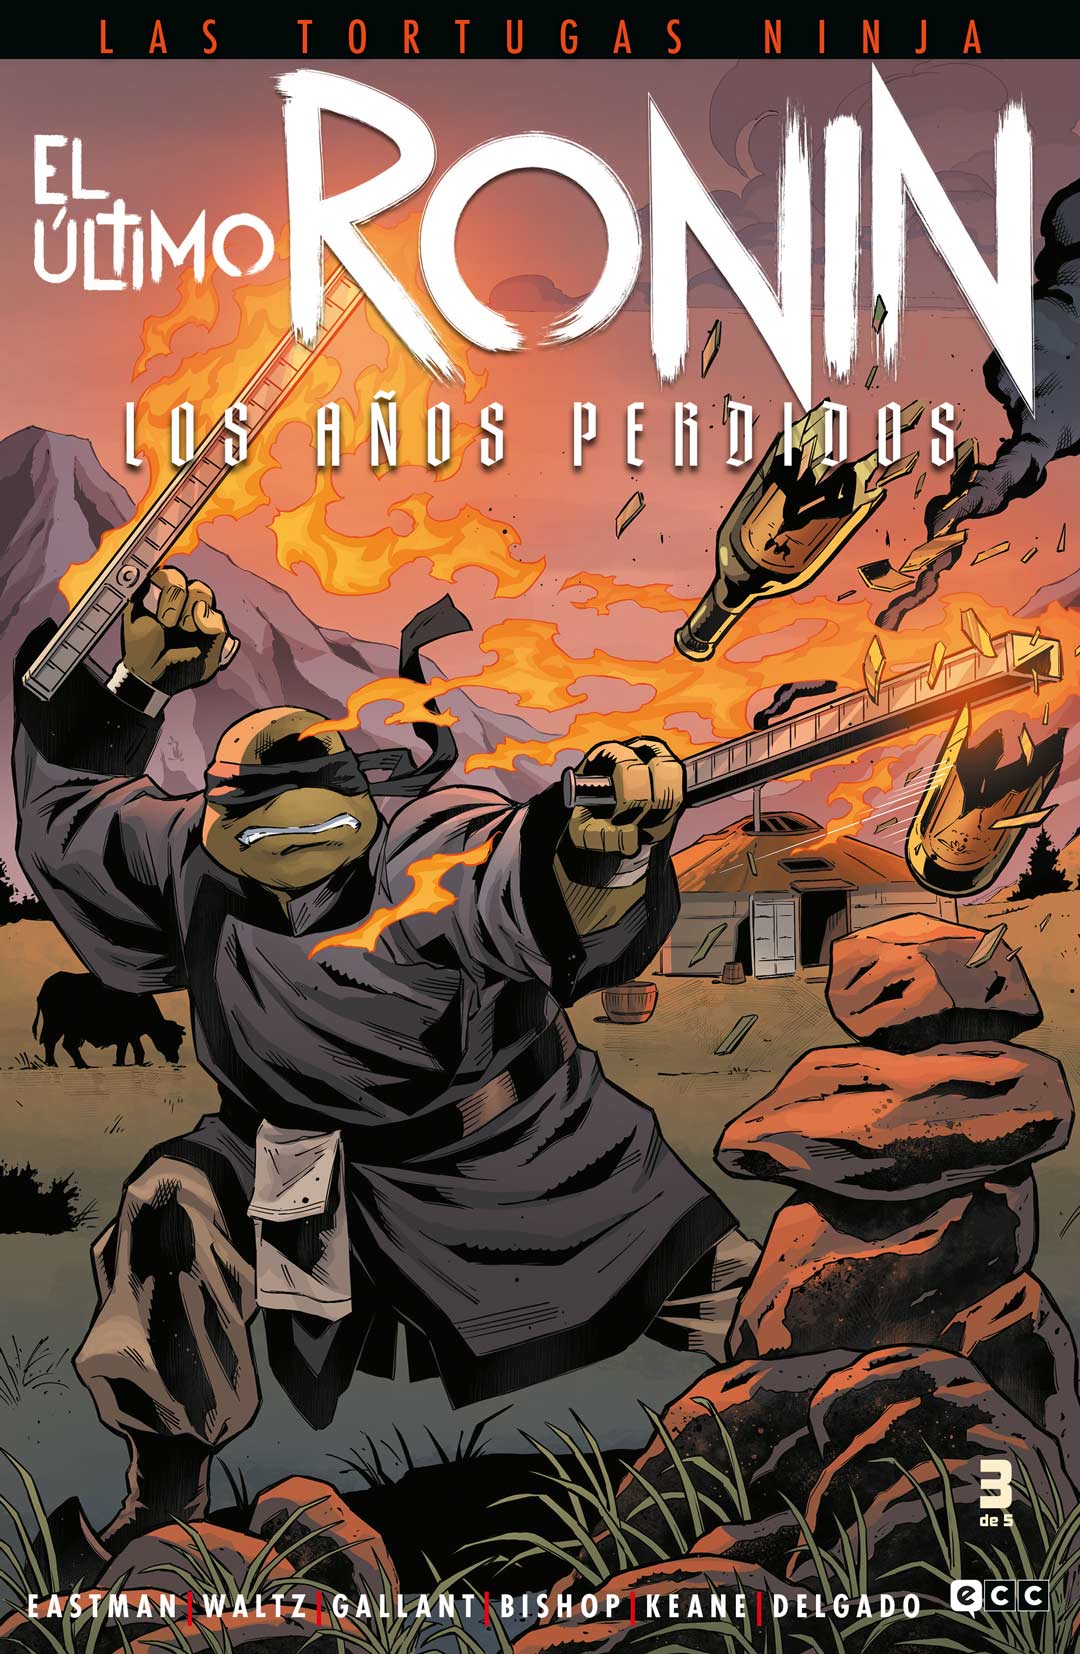 Las Tortugas Ninja: El último ronin - Los años perdidos #3 (de 5)